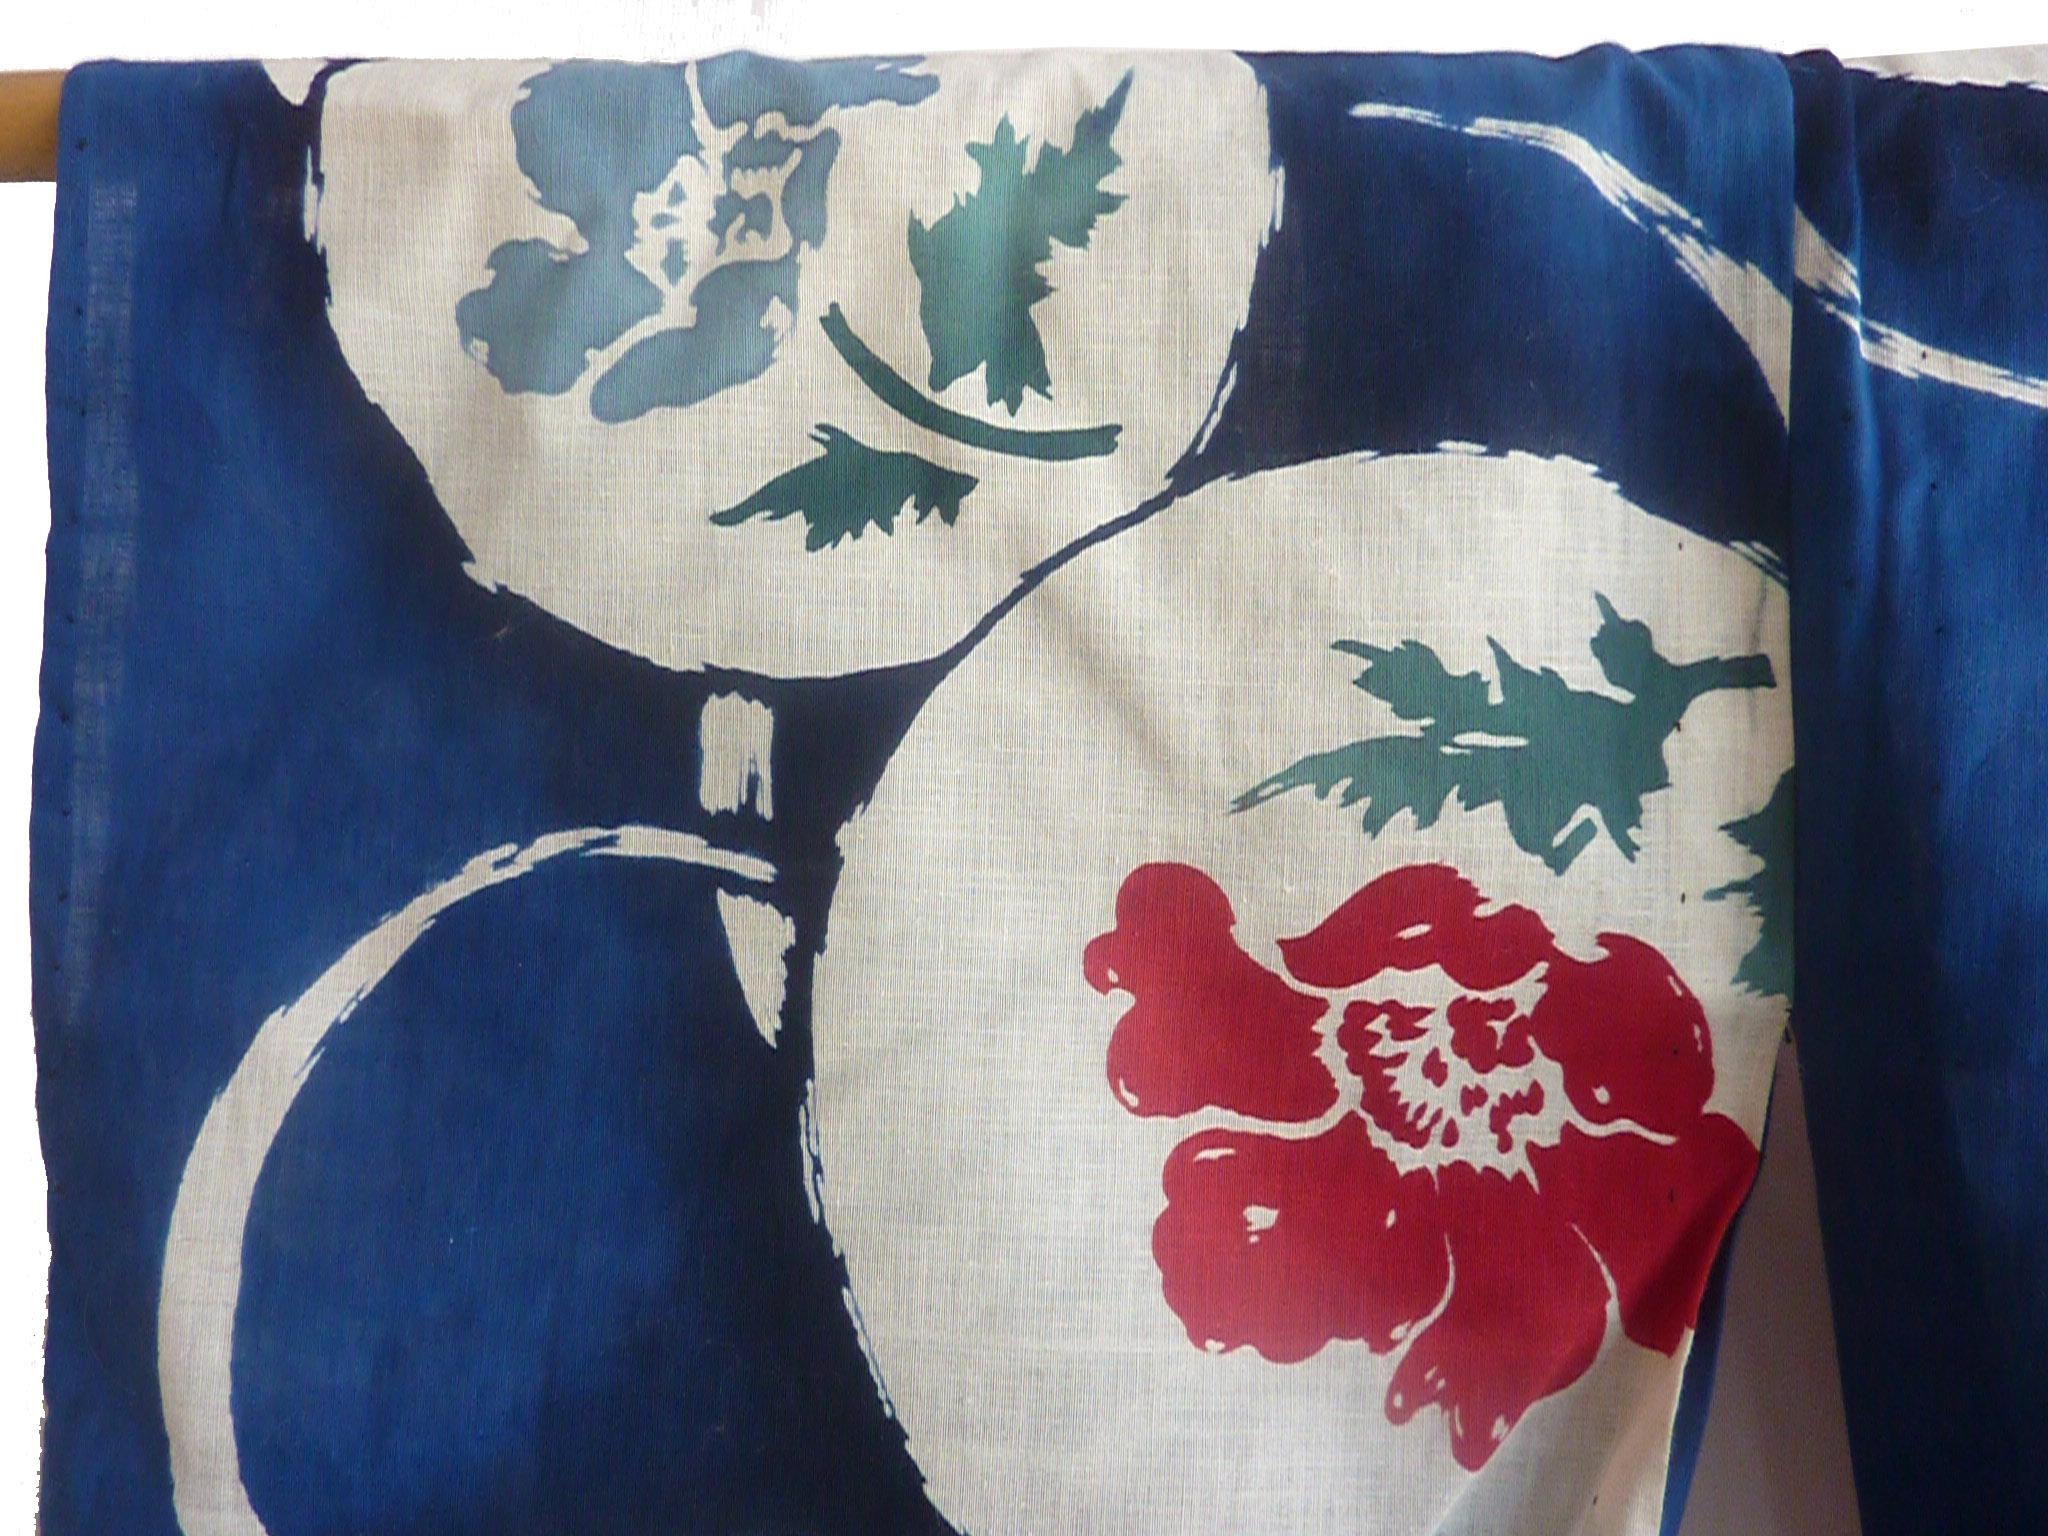 Etwa: 1920-1930
Herkunftsort: Japan
Material: Baumwolle
Muster: Blumenmond
Zustand: Sehr gut
Der marineblaue Kimono aus reiner Baumwolle ist handgenäht und in Japan hergestellt.

Gesamtlänge 55